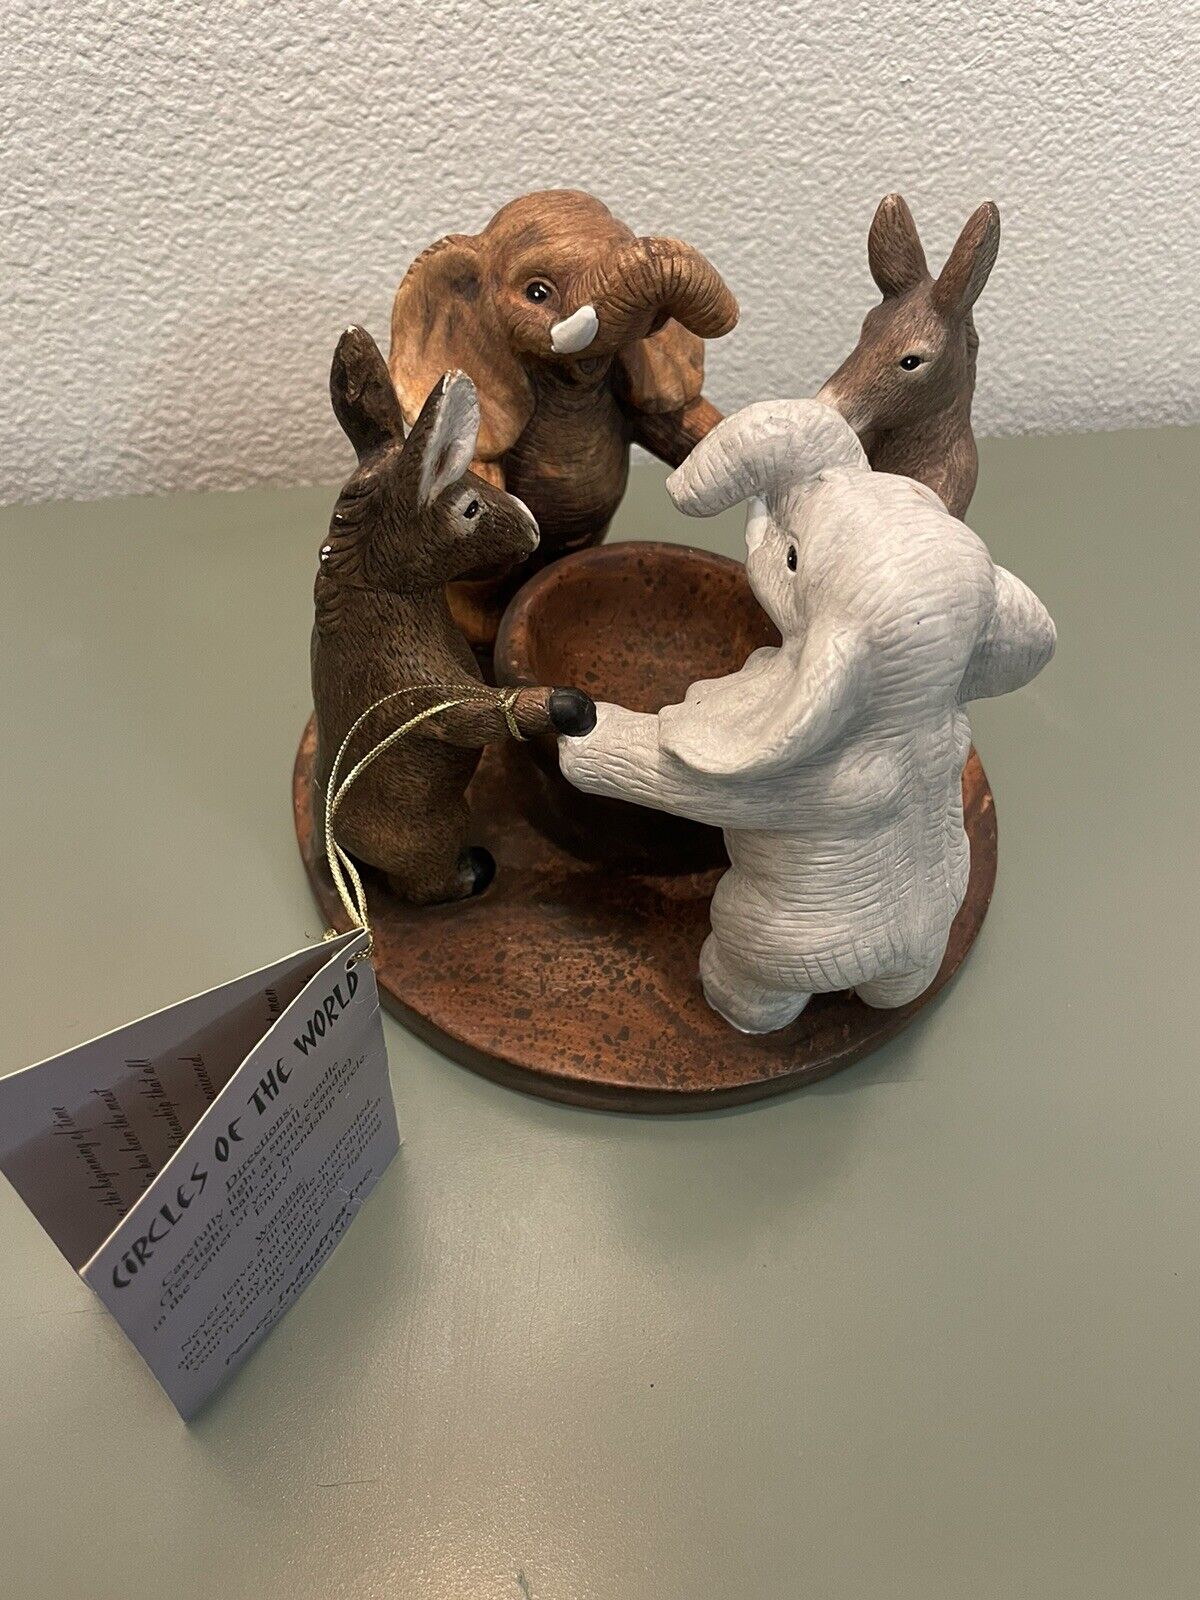 Penco Candle Holder Circles Of The World Elephants Donkeys Ceramic